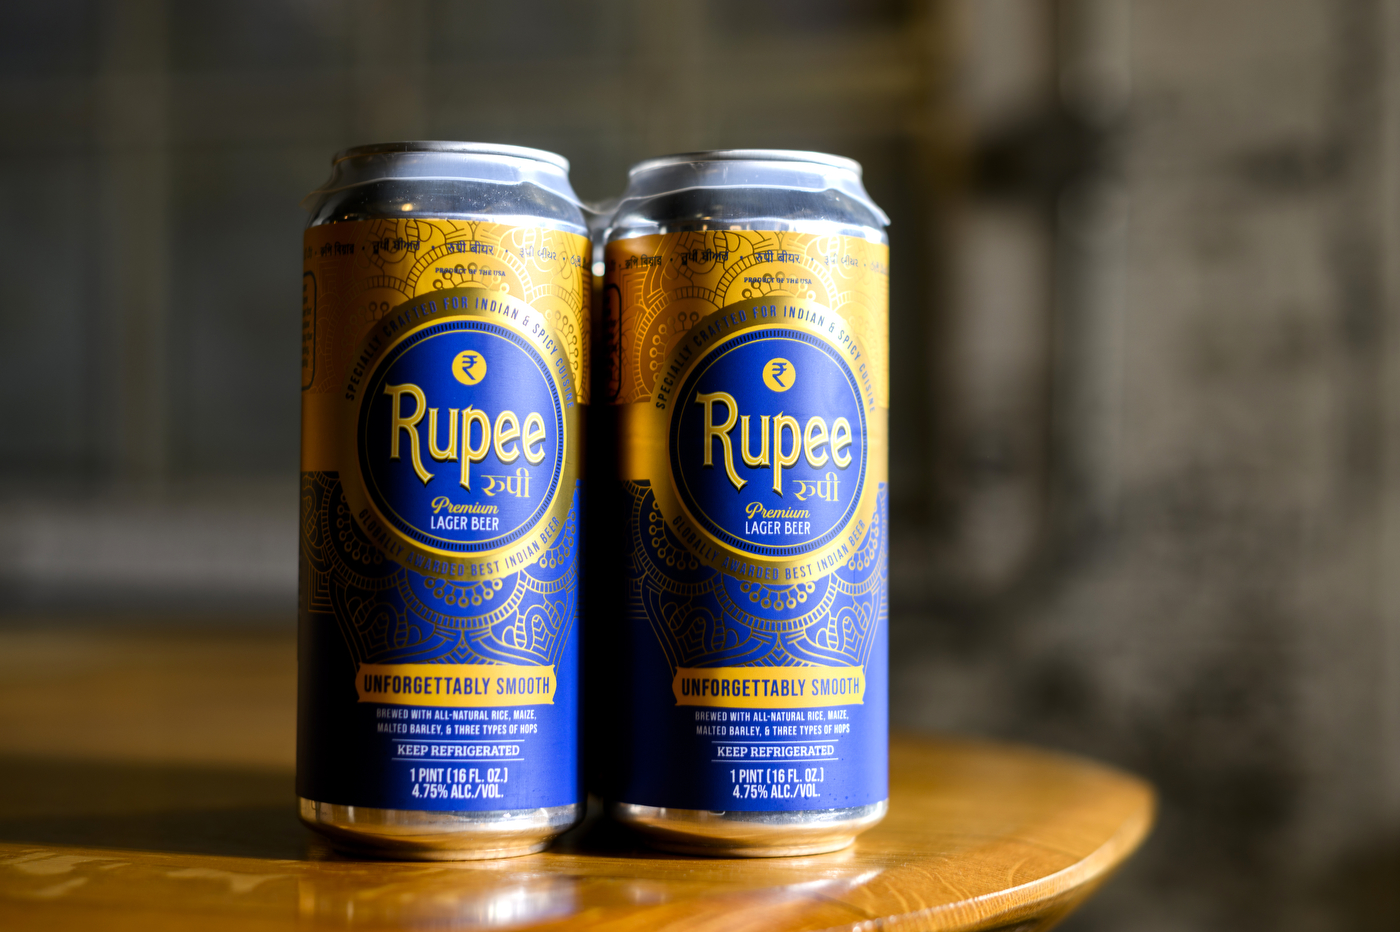 Case of Rupee beer